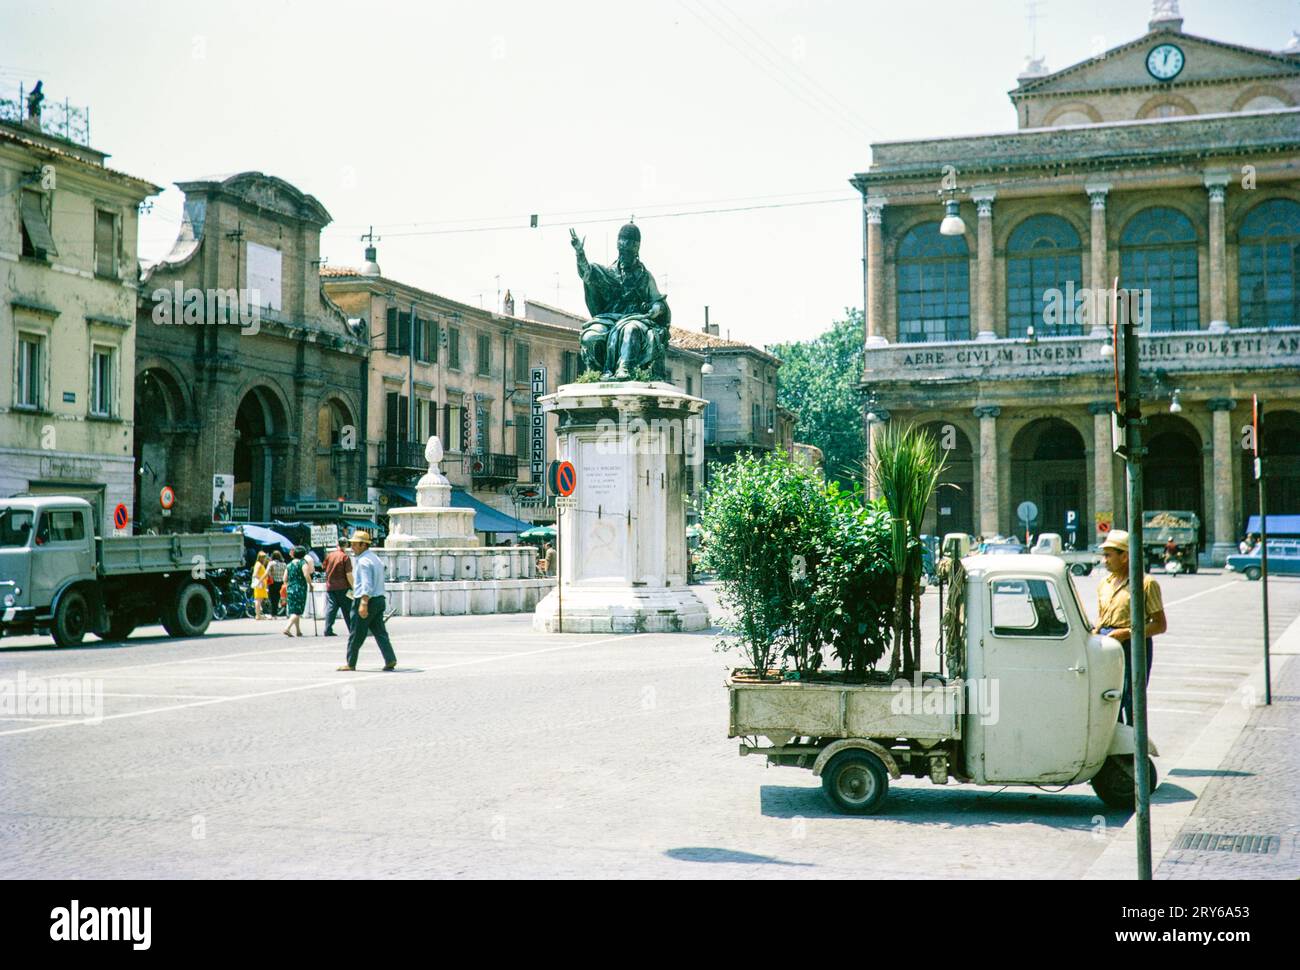 Fontana 1543 e statua di Paulo Burchesio, Piazza Cavour, Rimini, regione Emilia-Romagna, Italia 1969 Foto Stock